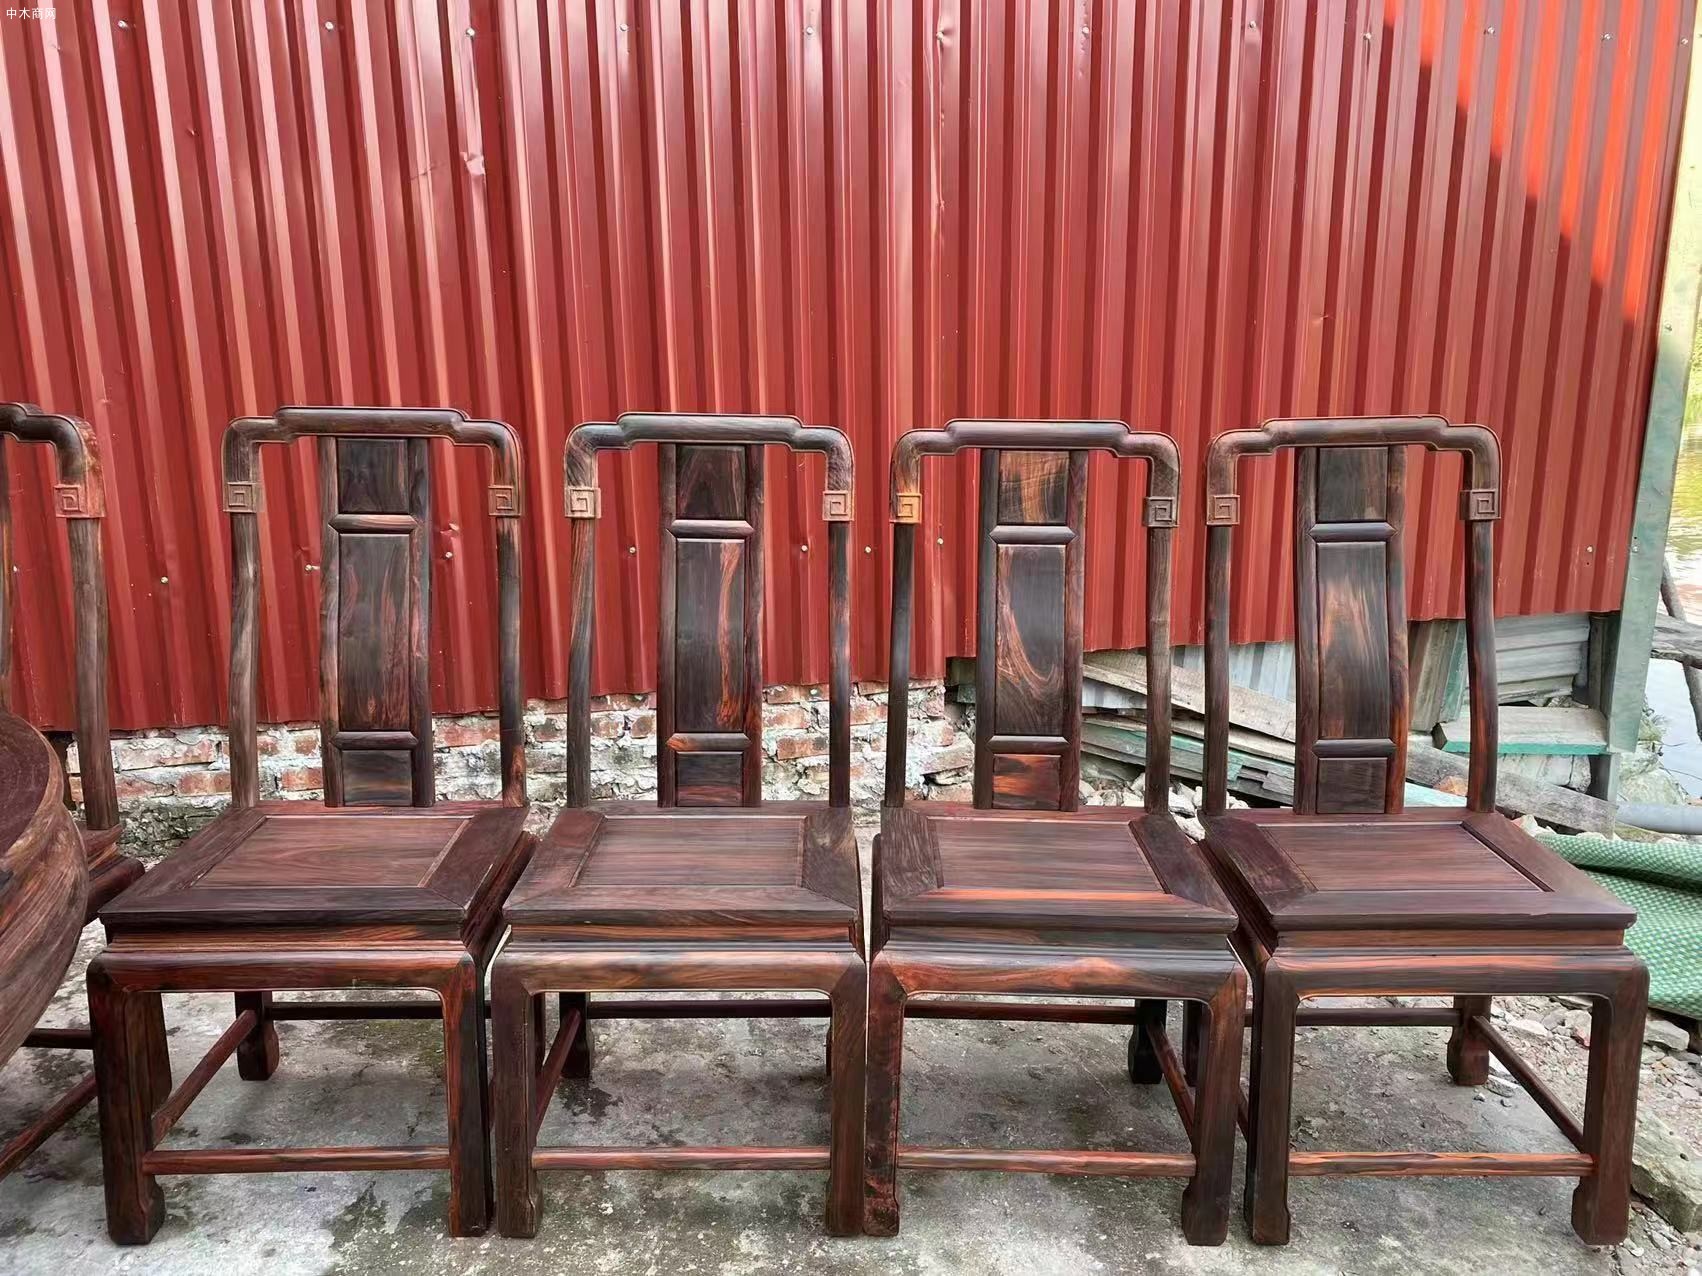 凭祥龙之涵红木家具的老挝大红酸枝圆餐桌价格品牌